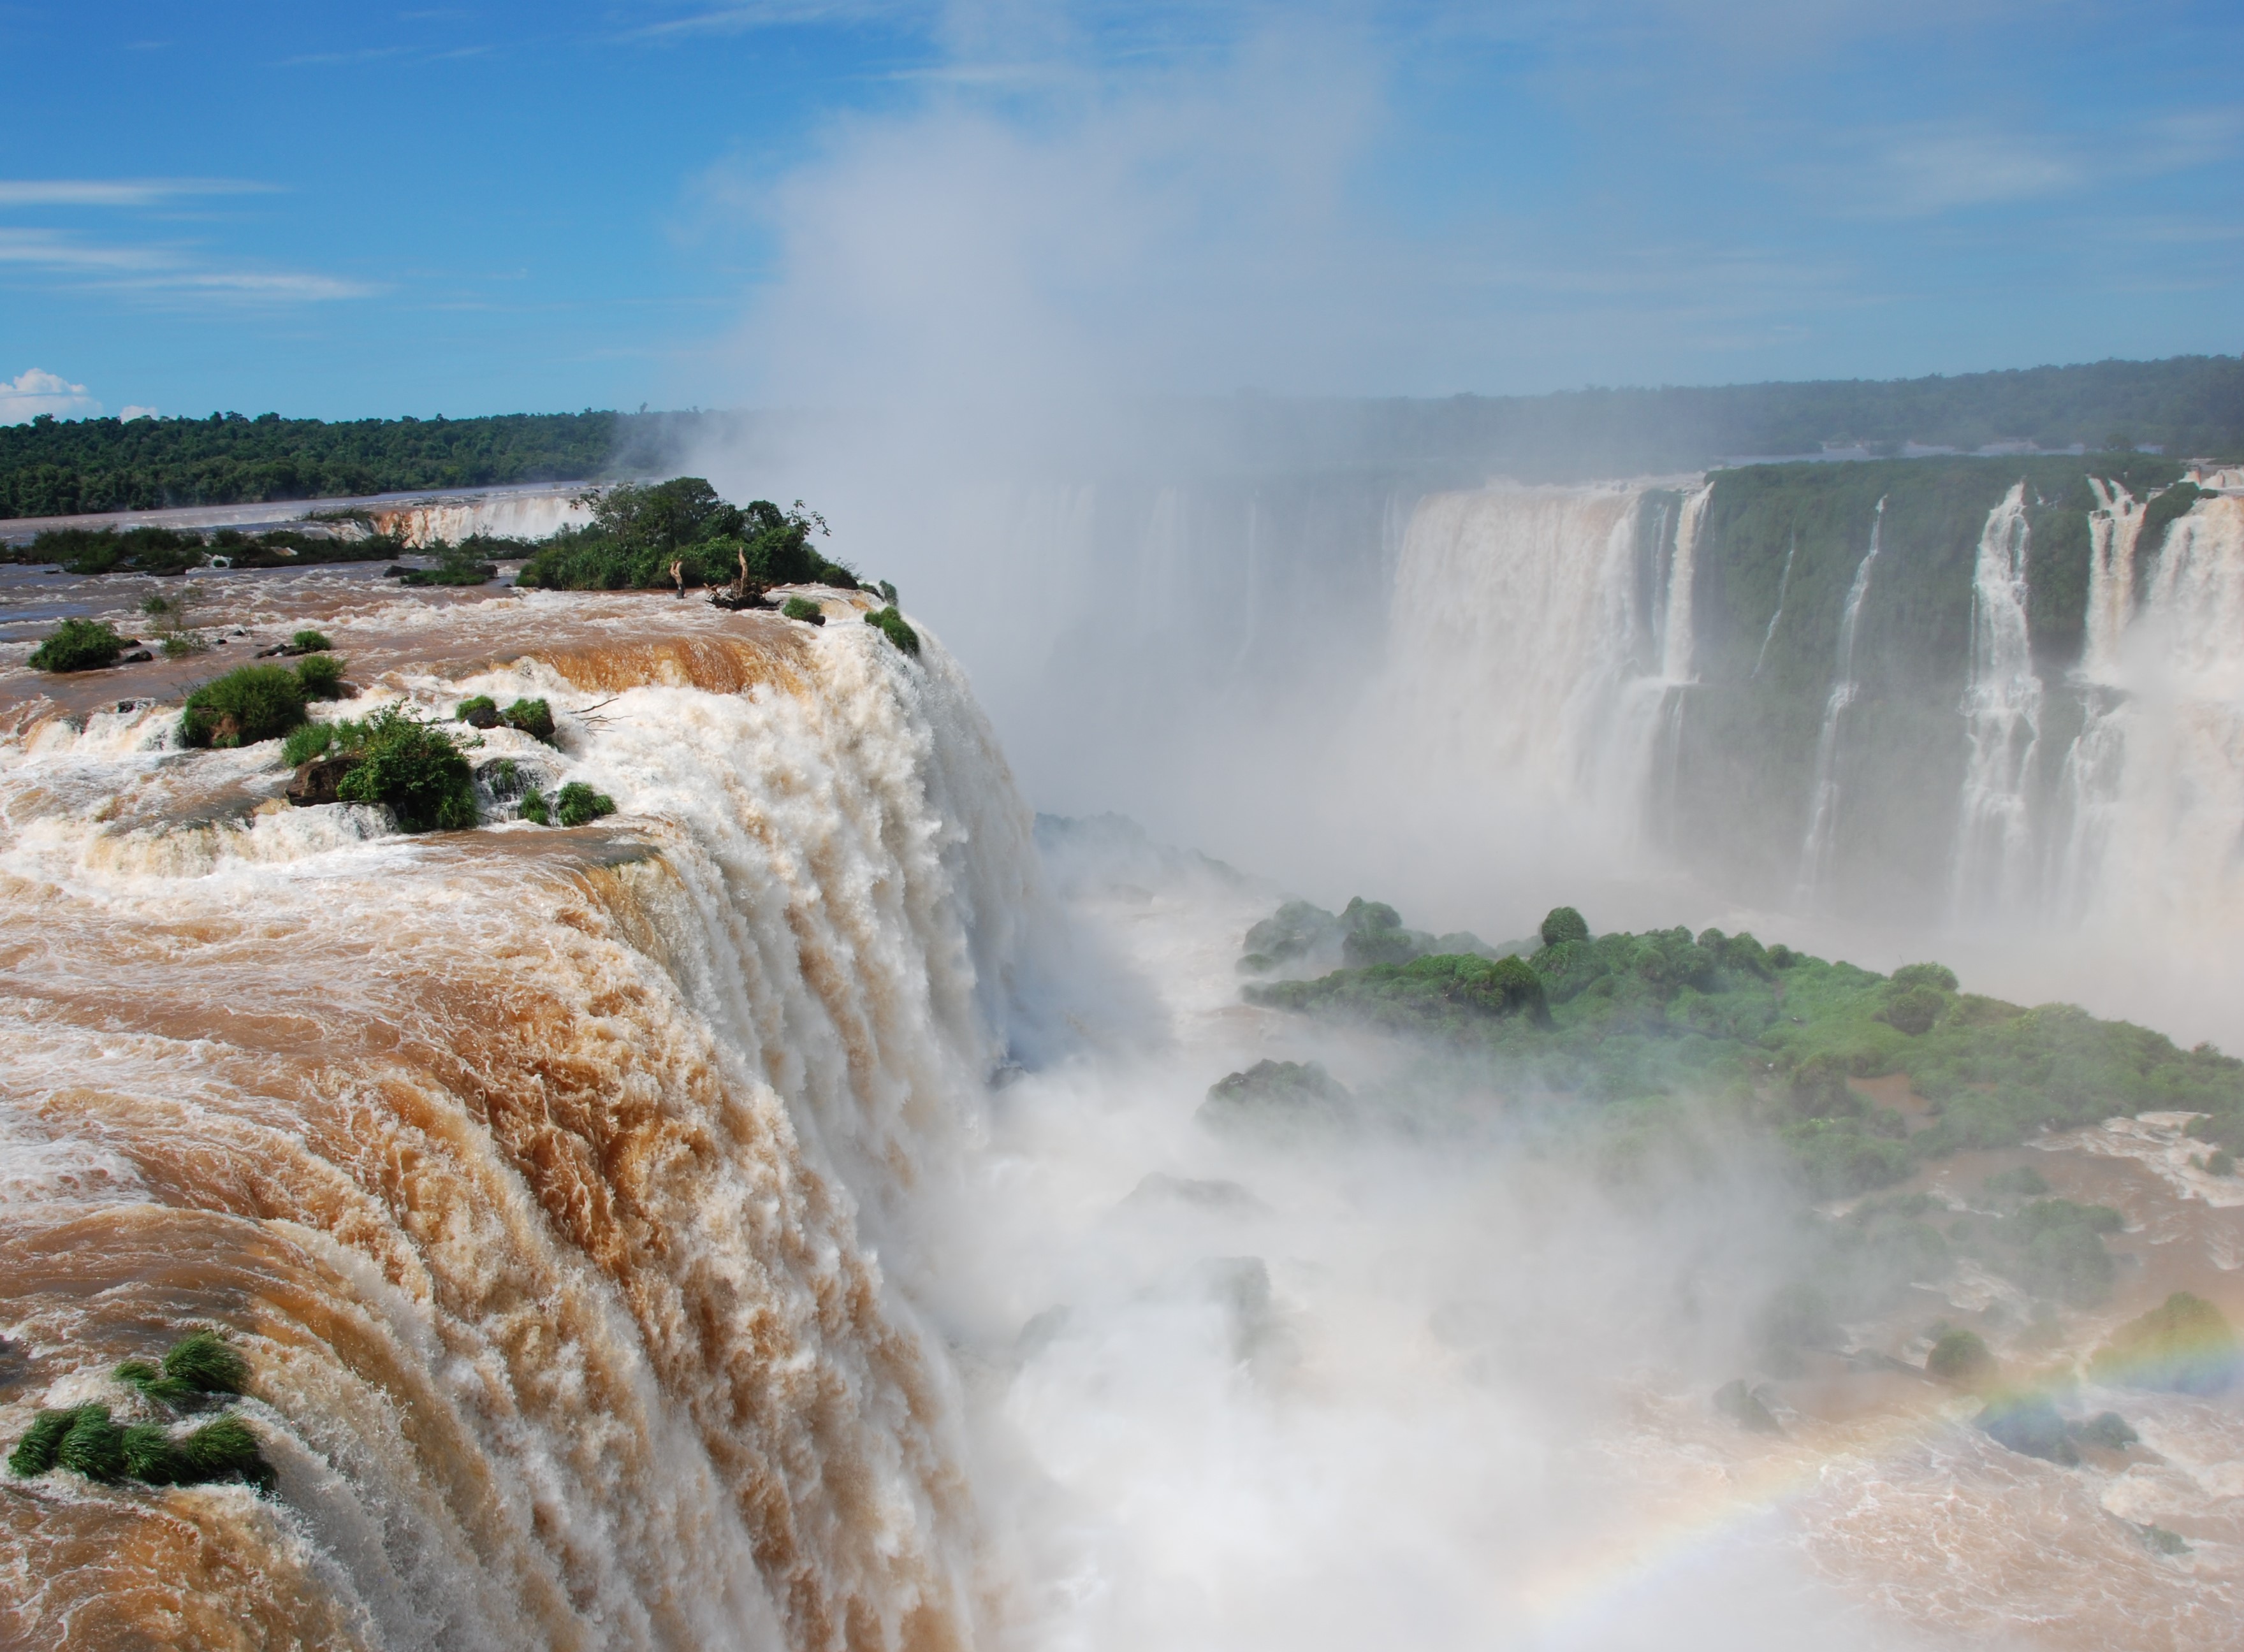 Spectacle de bruits et d'images ahurissant, le récit de notre visite aux chutes d'Iguazu sur Eldoradonews !